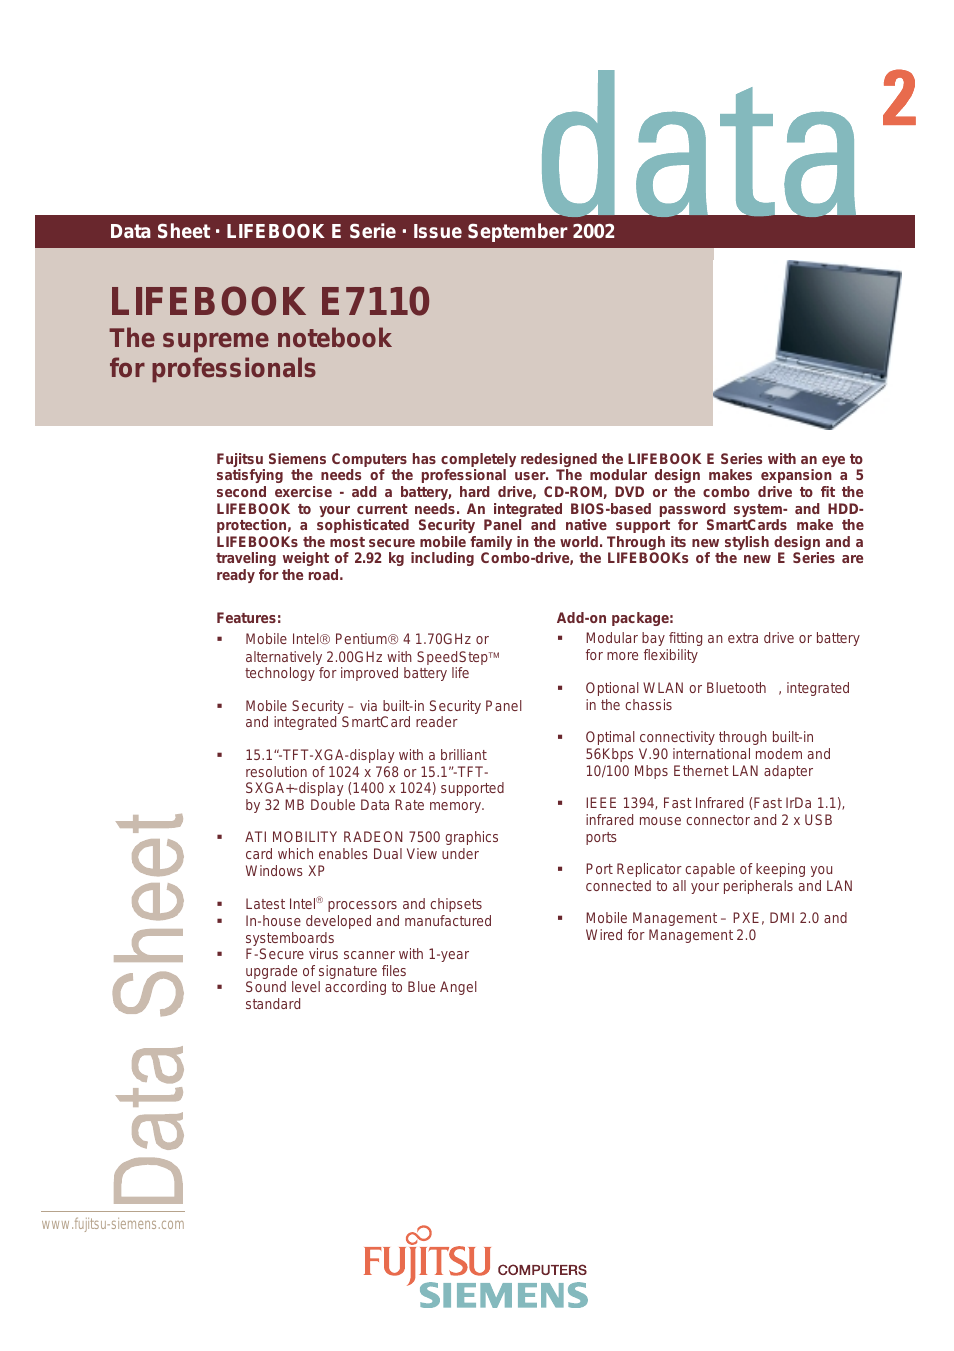 Lifebook E7110